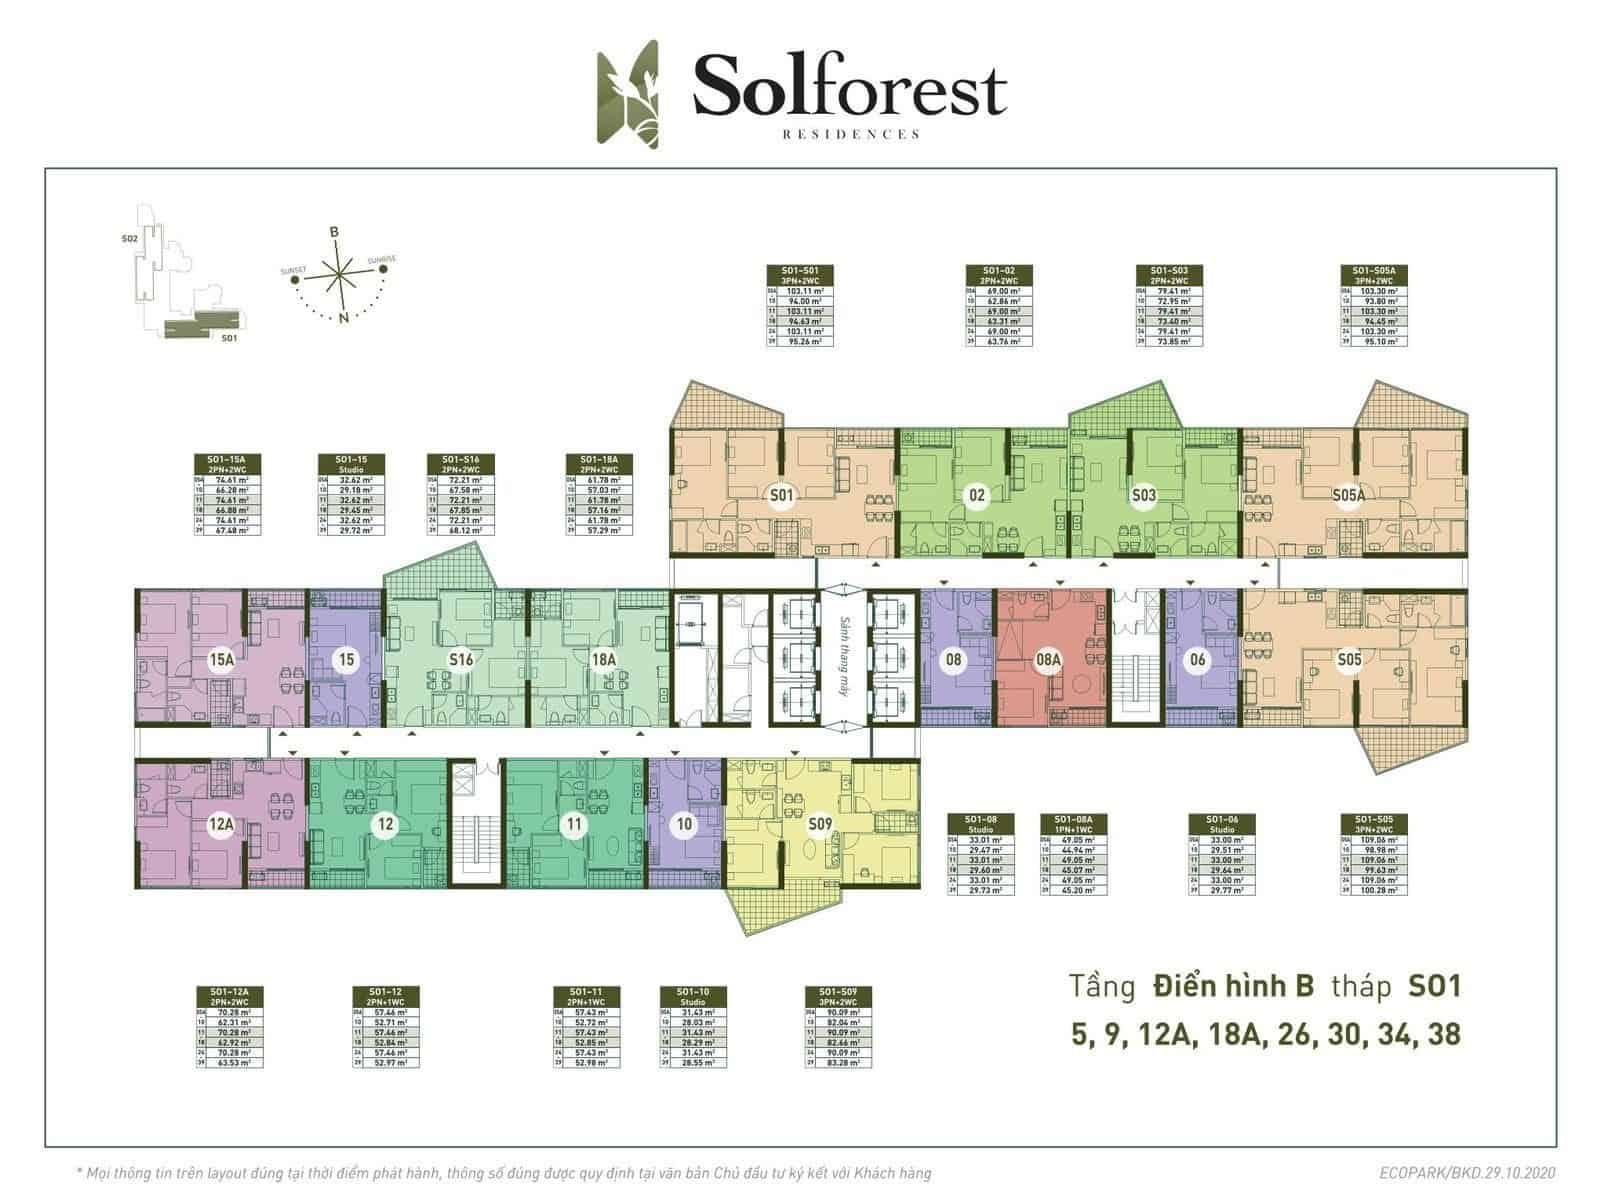 Tầng điển hình B chung cư Solforest